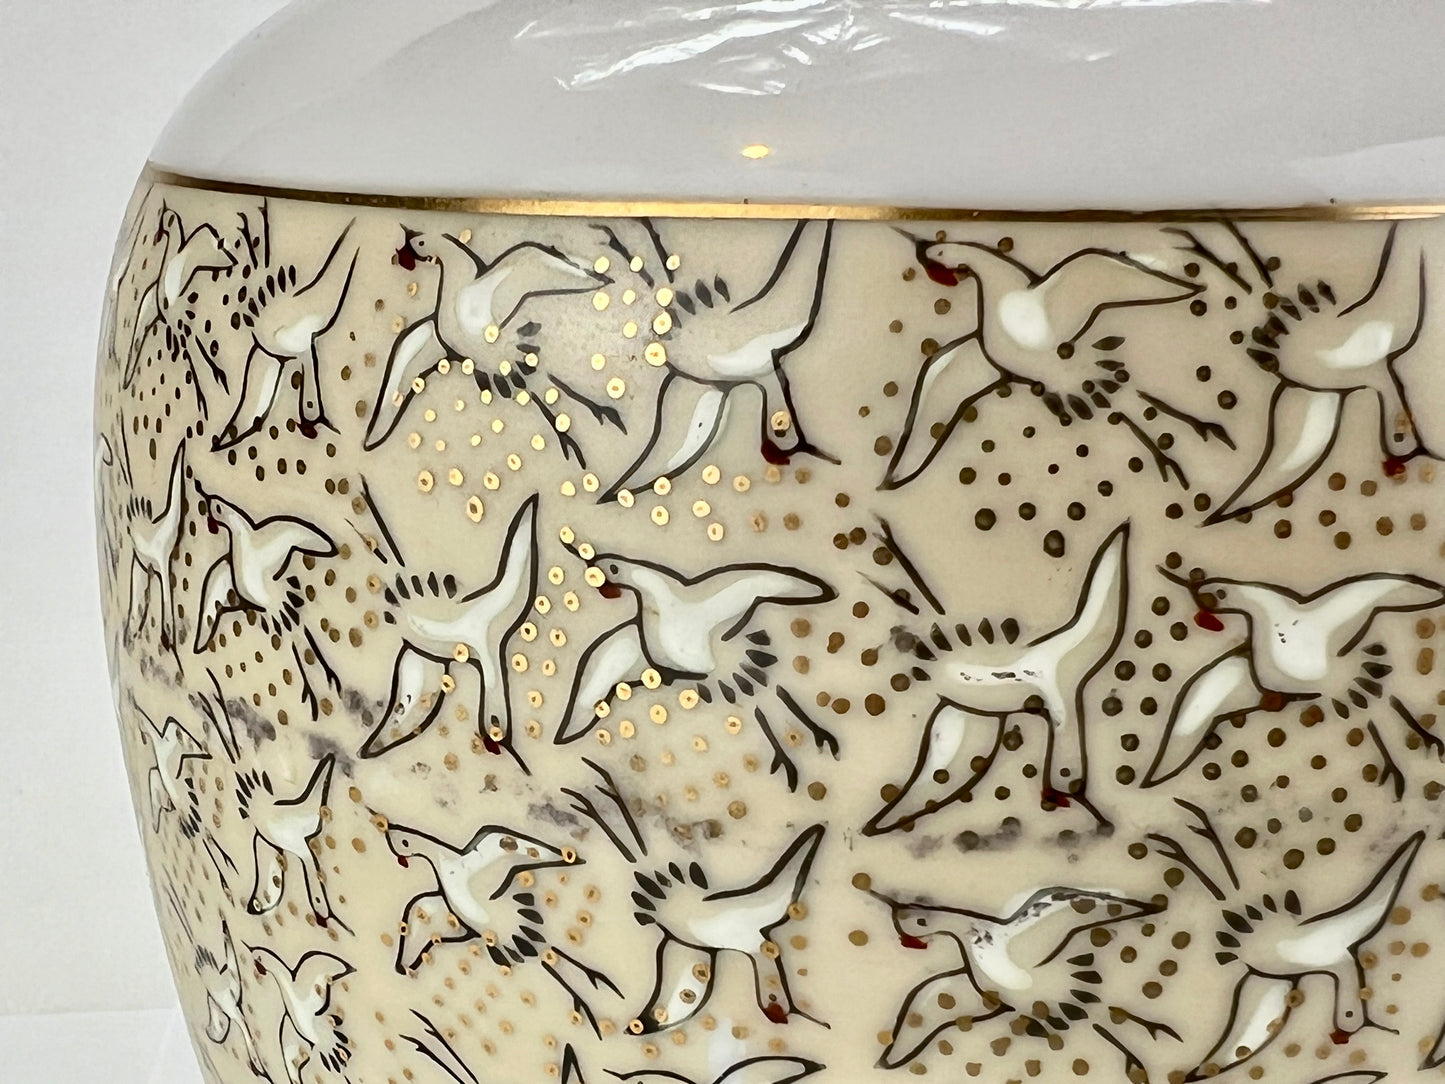 Vintage Porcelain Vase w/ Cranes in Black & Gold 7"